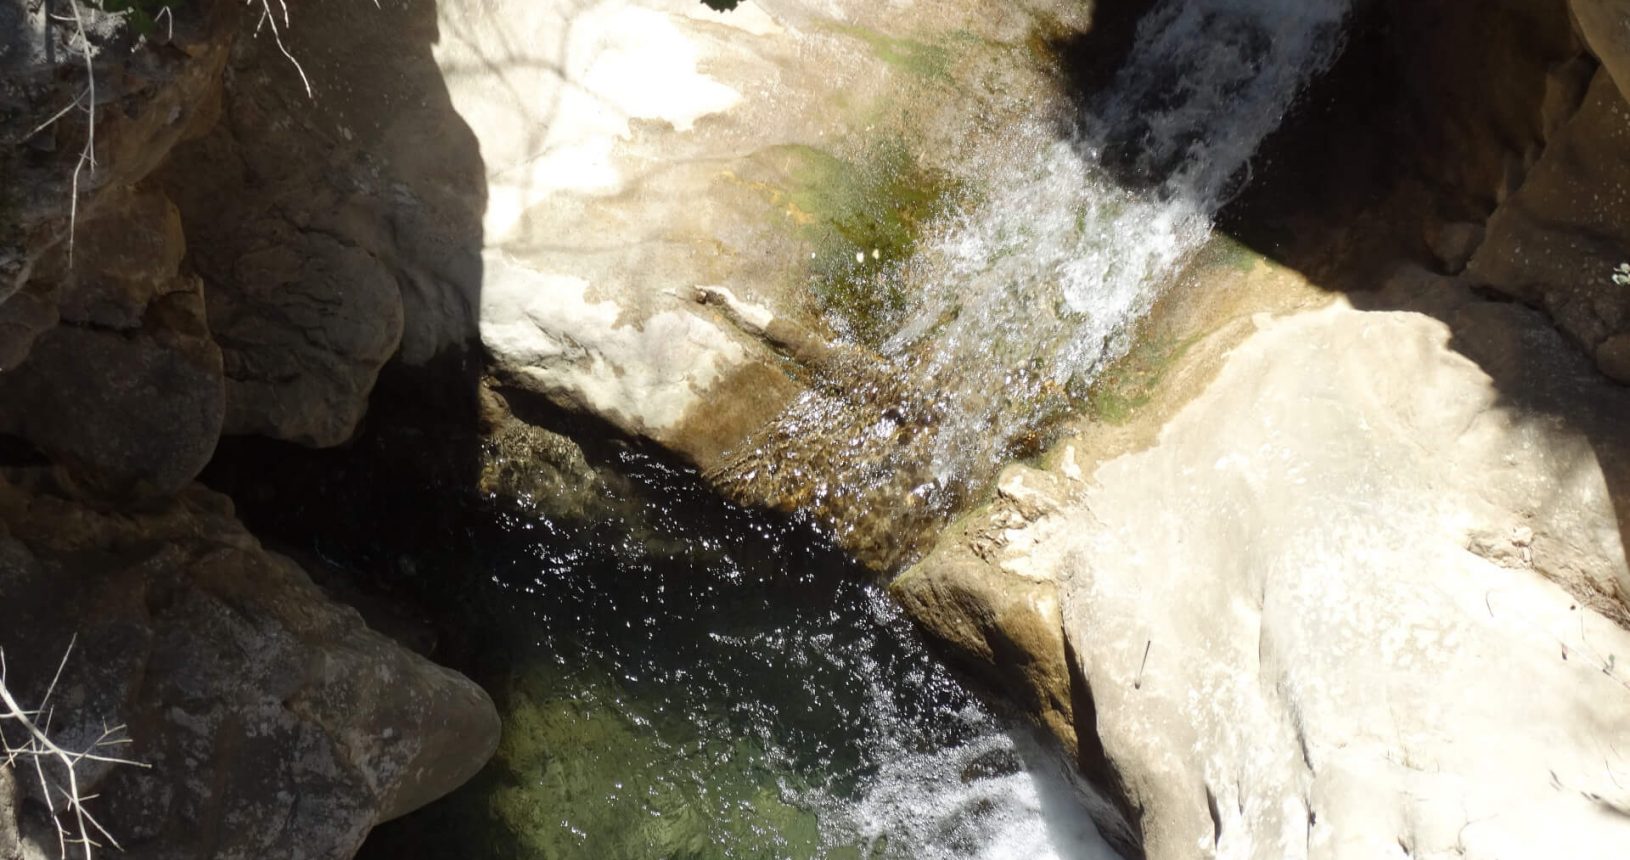 Bar Waterfall in the rocks